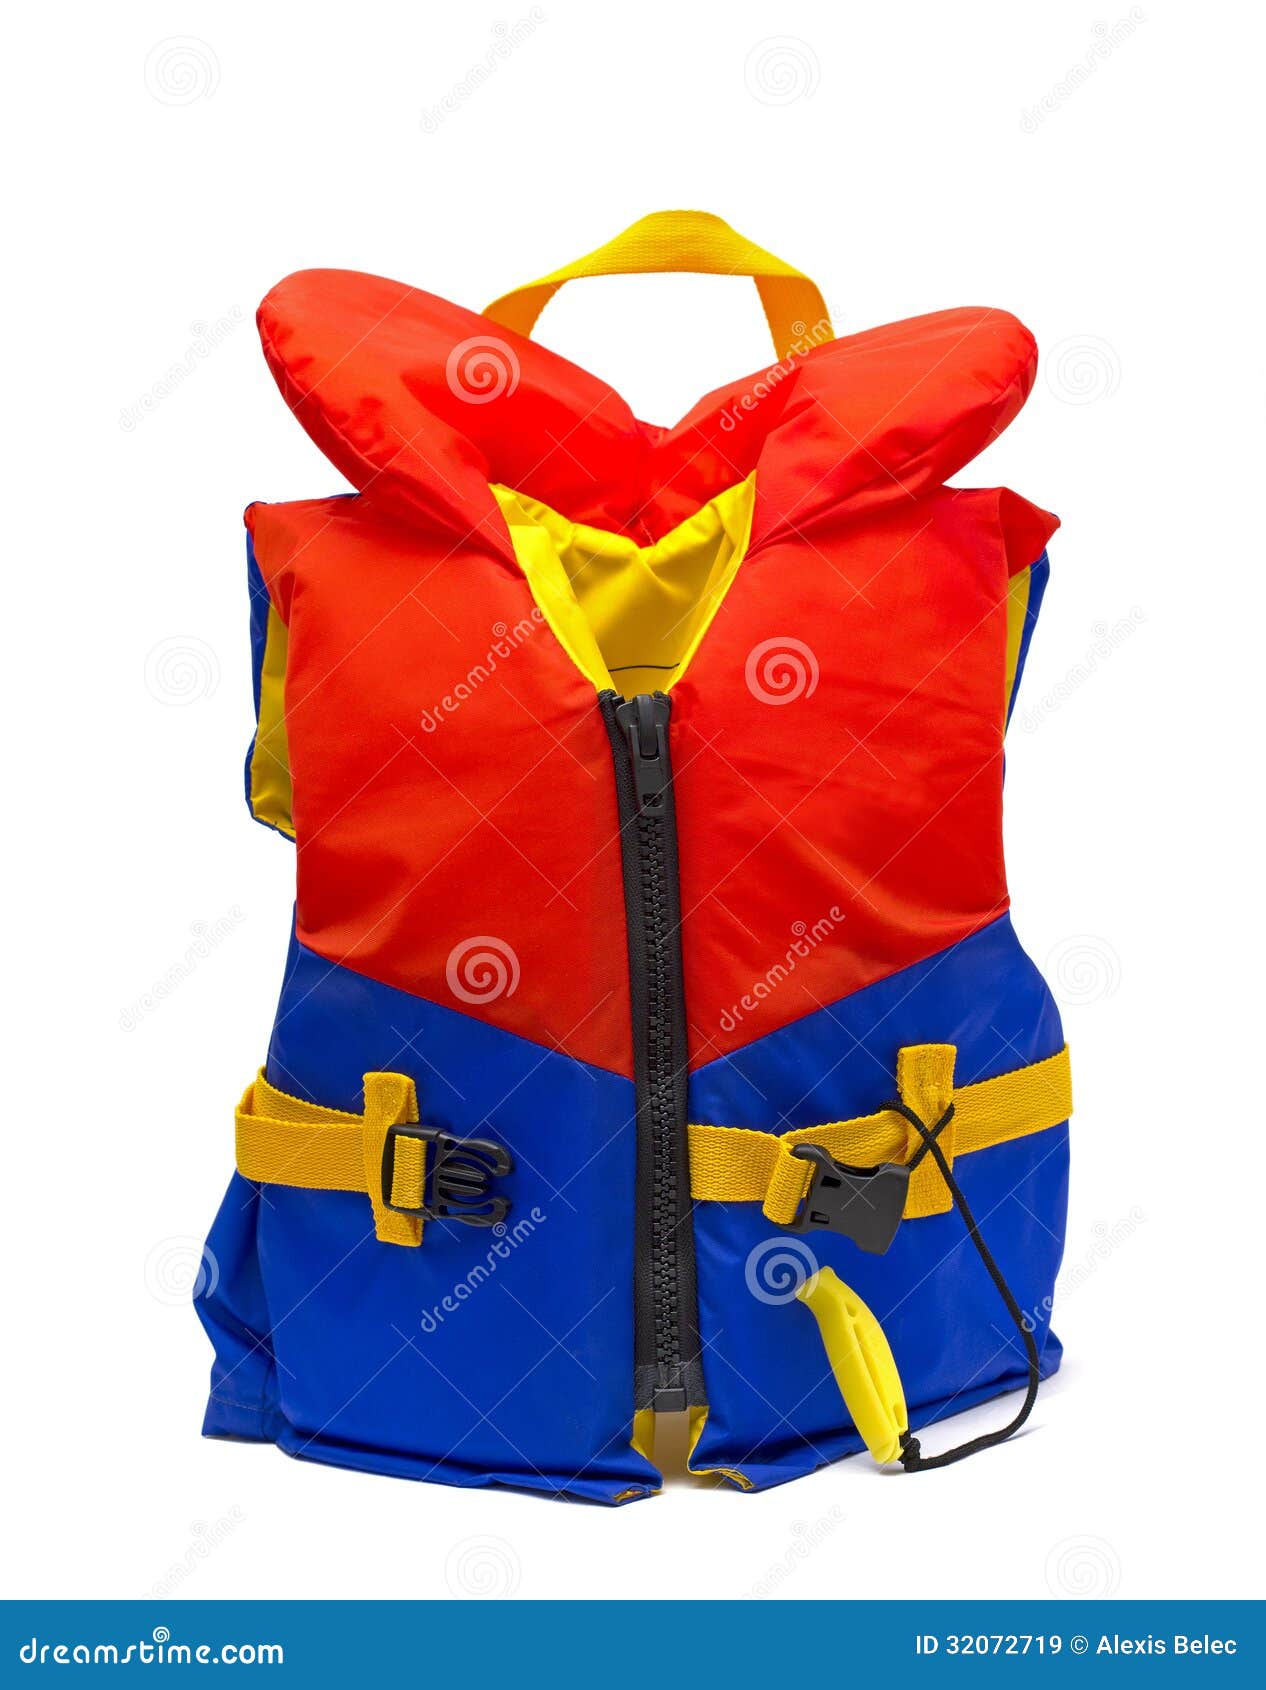 Life jacket stock image. Image of white, yellow, whisle - 32072719